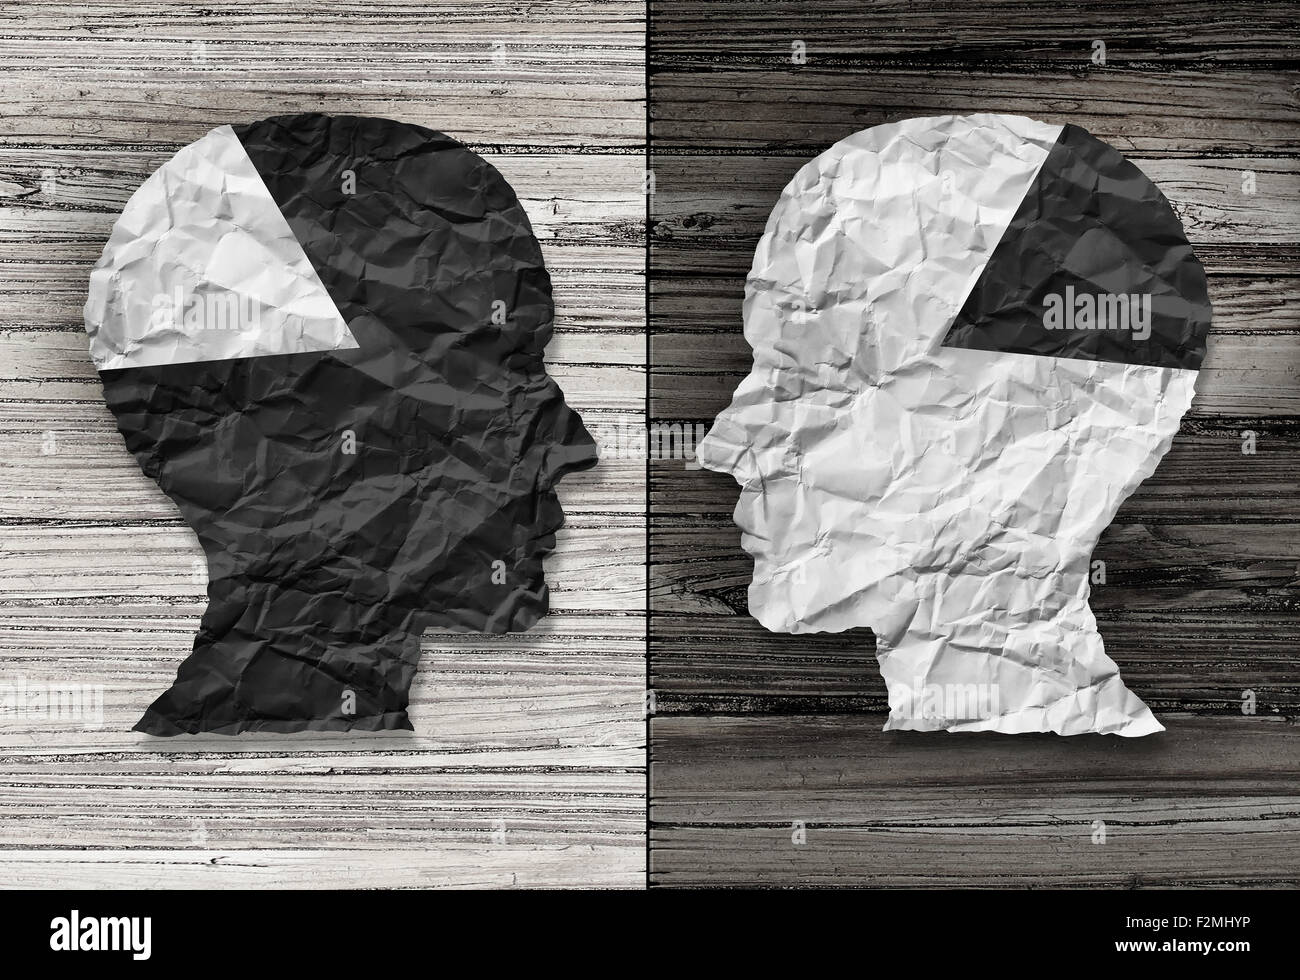 Ethnische Gleichheit Konzept und rassische Gerechtigkeit Symbol als ein schwarz / weiß zerknittertes Papier in Form eines menschlichen Kopfes auf alten rustikalen Holz Stockfoto